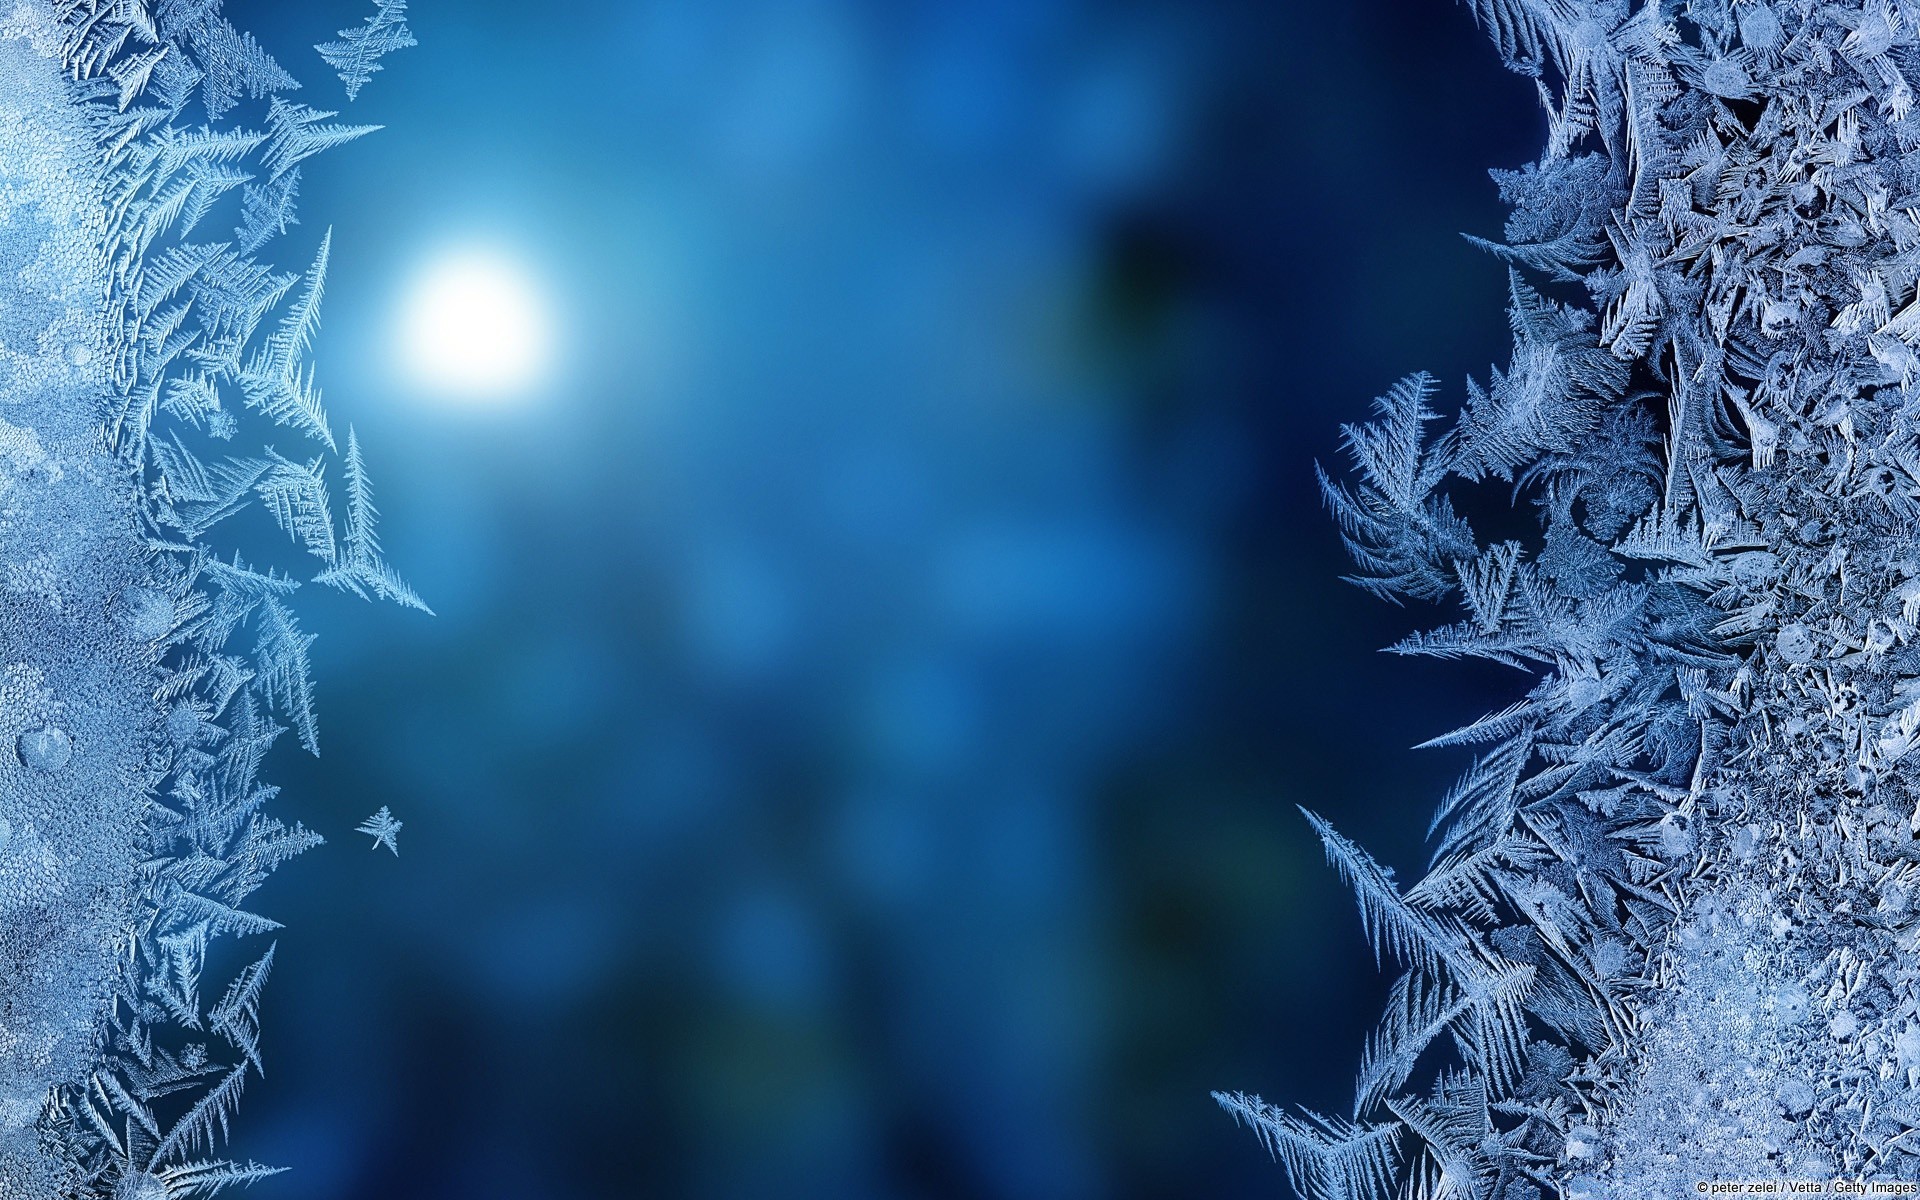 капельки и вода мороз зима снег рождество холодная замороженные природа лед морозный рабочего стола древесины дерево сезон ледяной снежинка на открытом воздухе аннотация